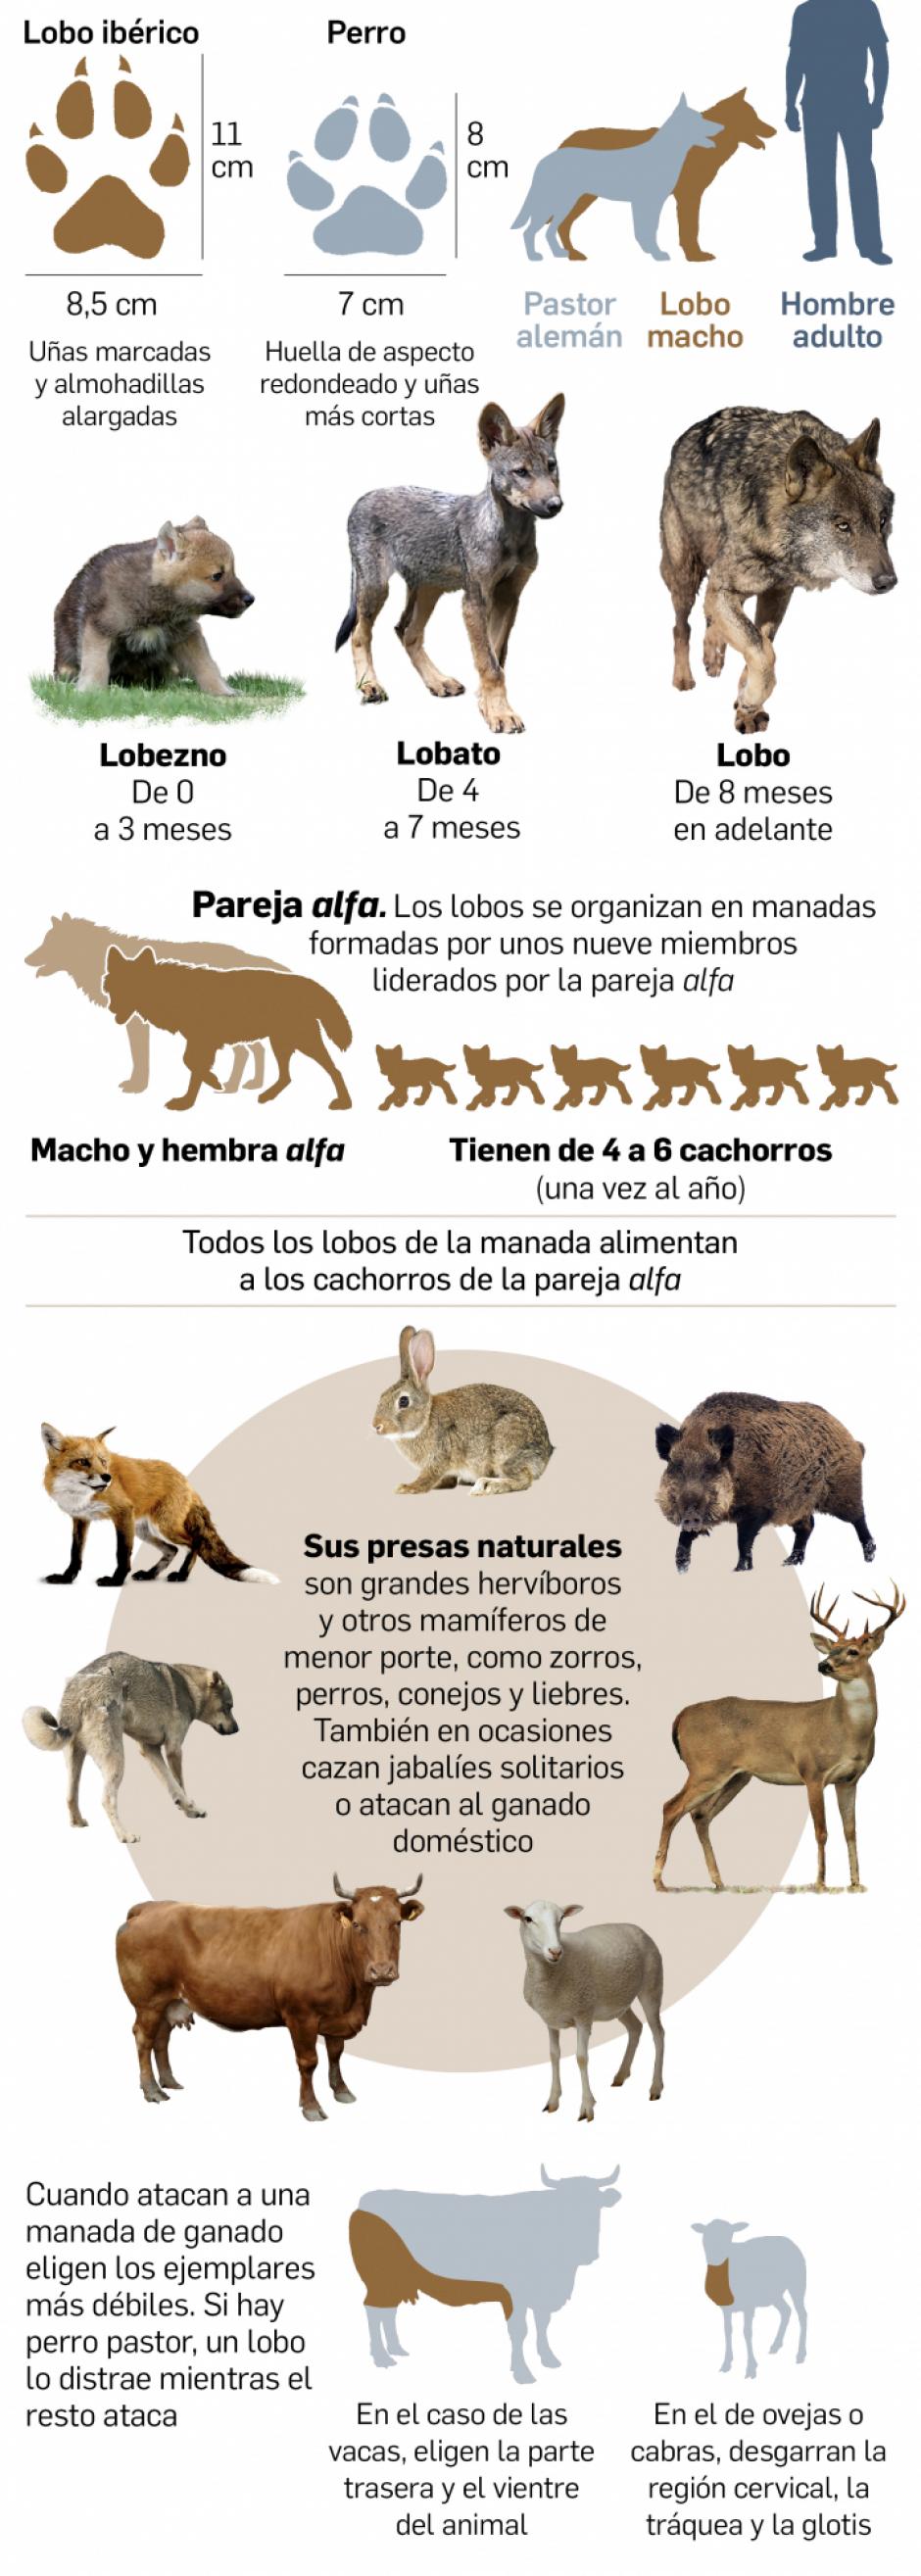 Cantabria desoye al Gobierno y permitirá cazar lobos en su territorio